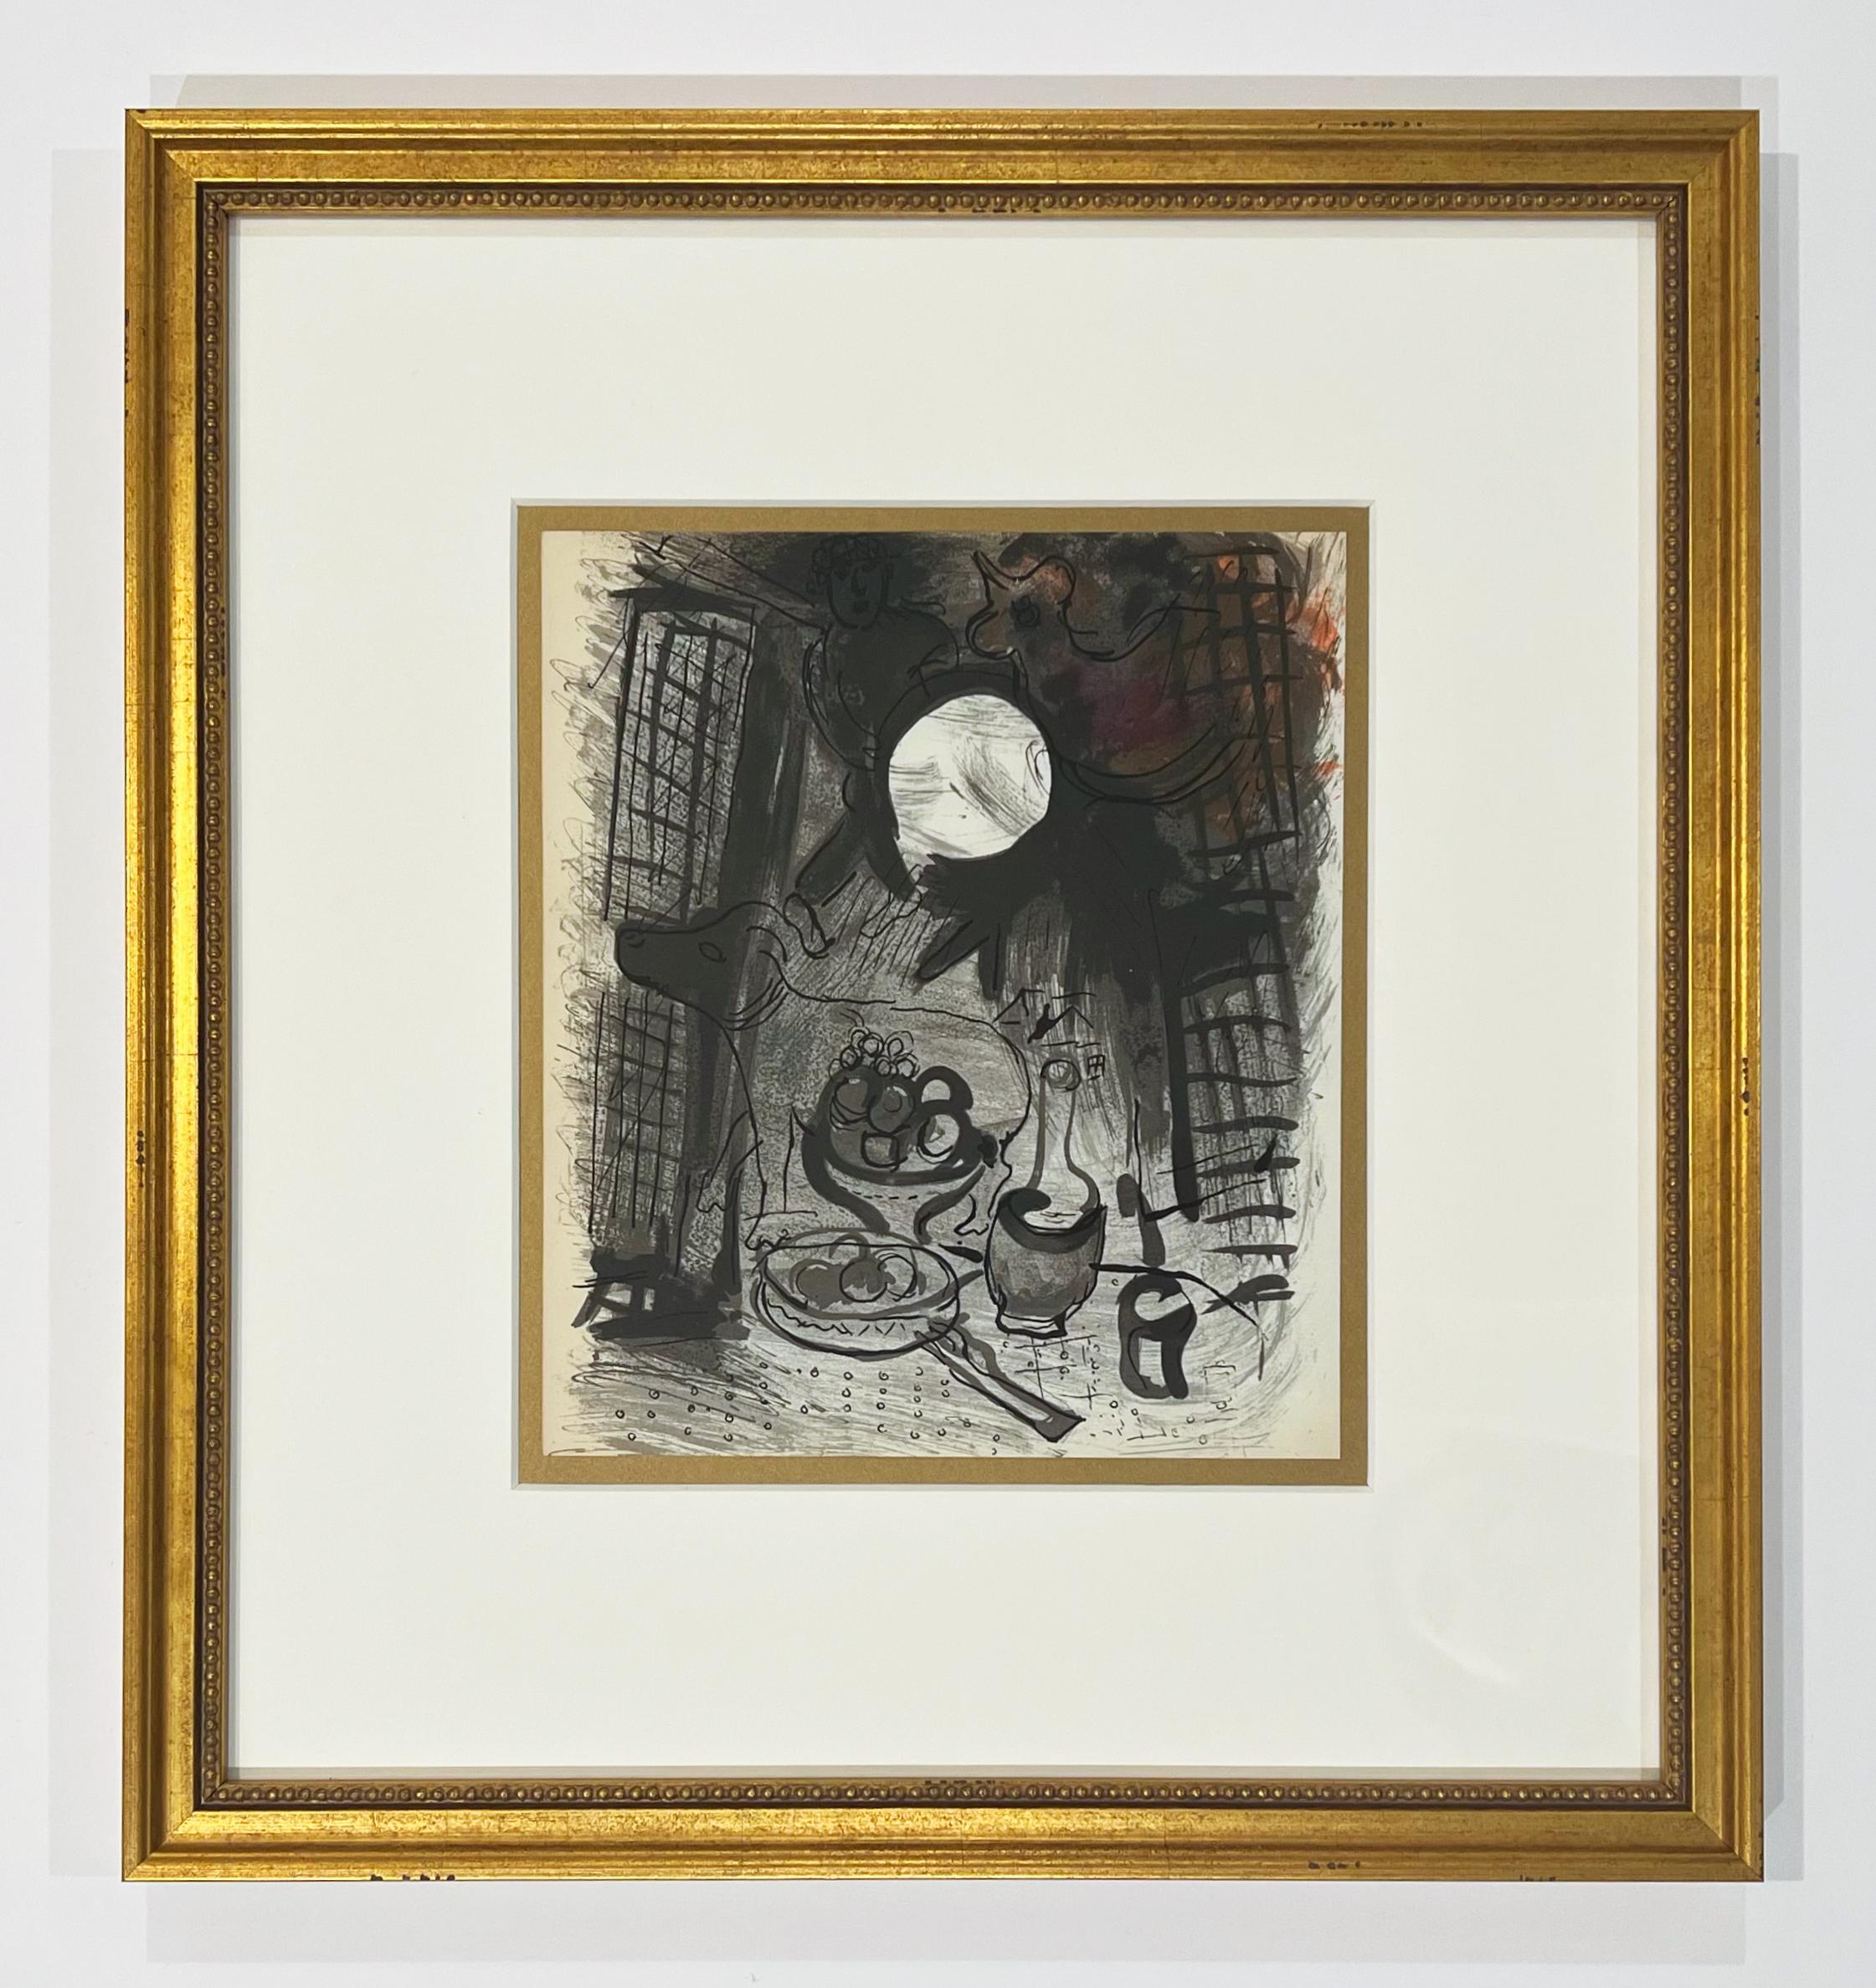 Braunes Stillleben von Chagall von Jacques Lassaigne – Print von Marc Chagall